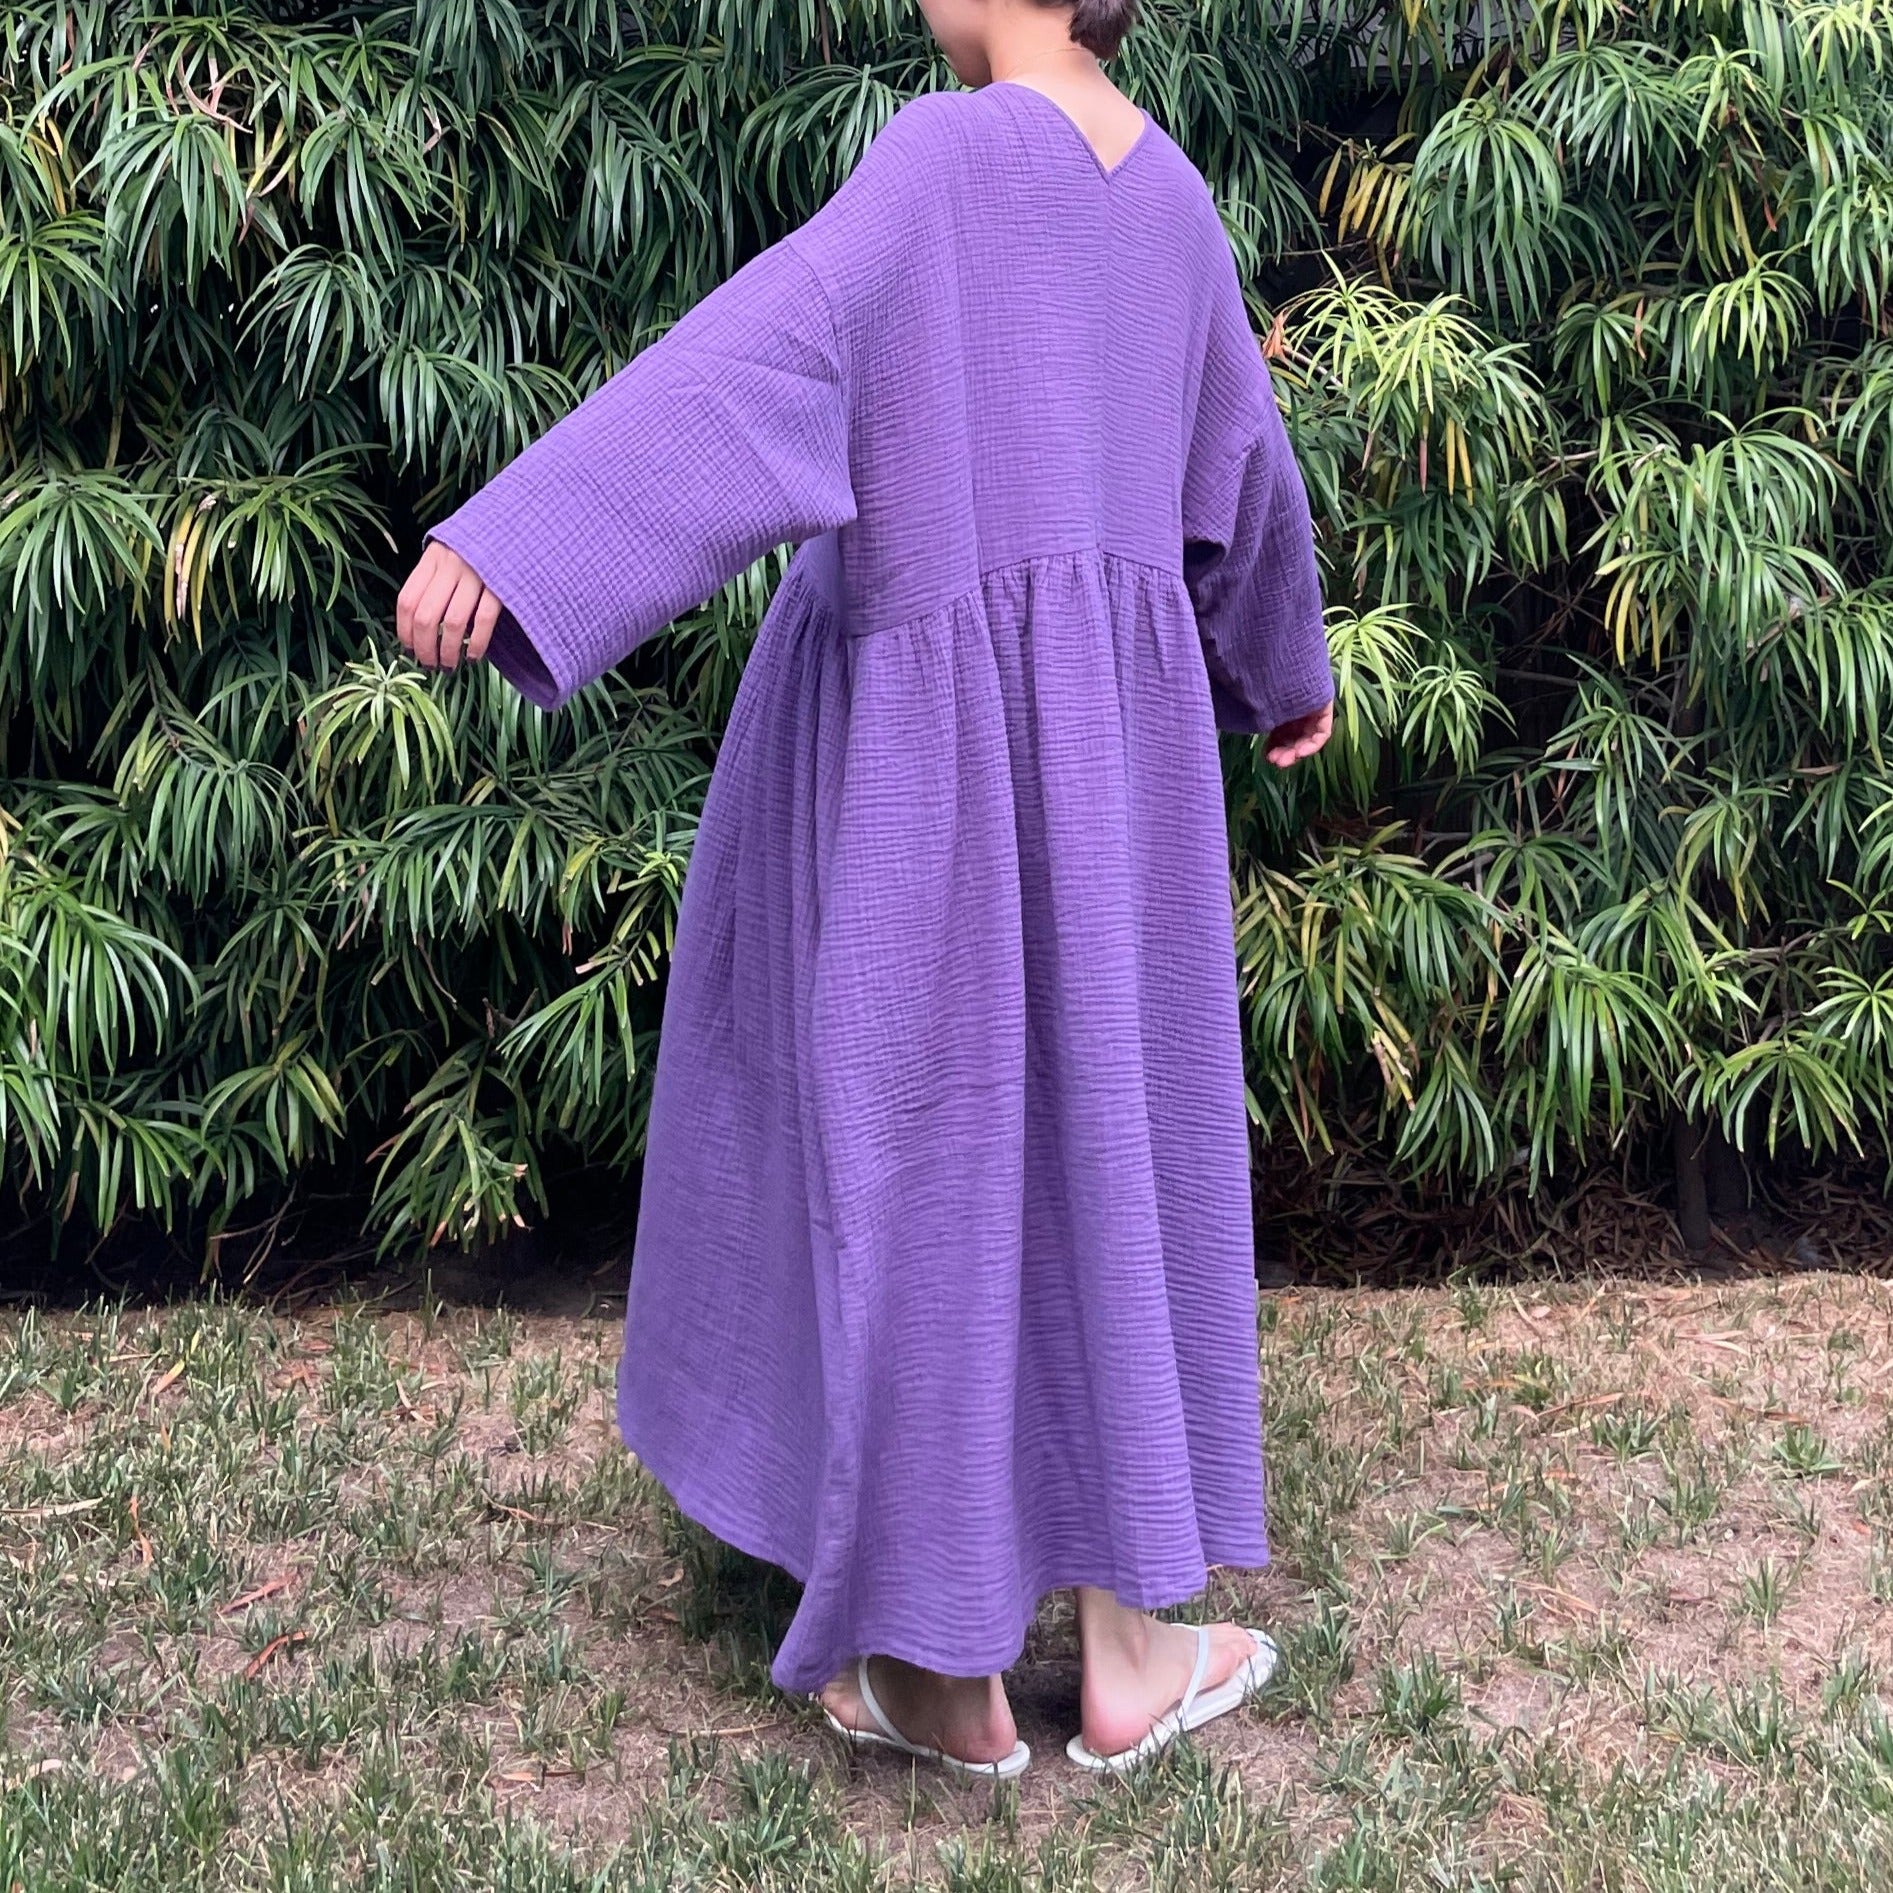 Picnic Dress Jacaranda – April meets october